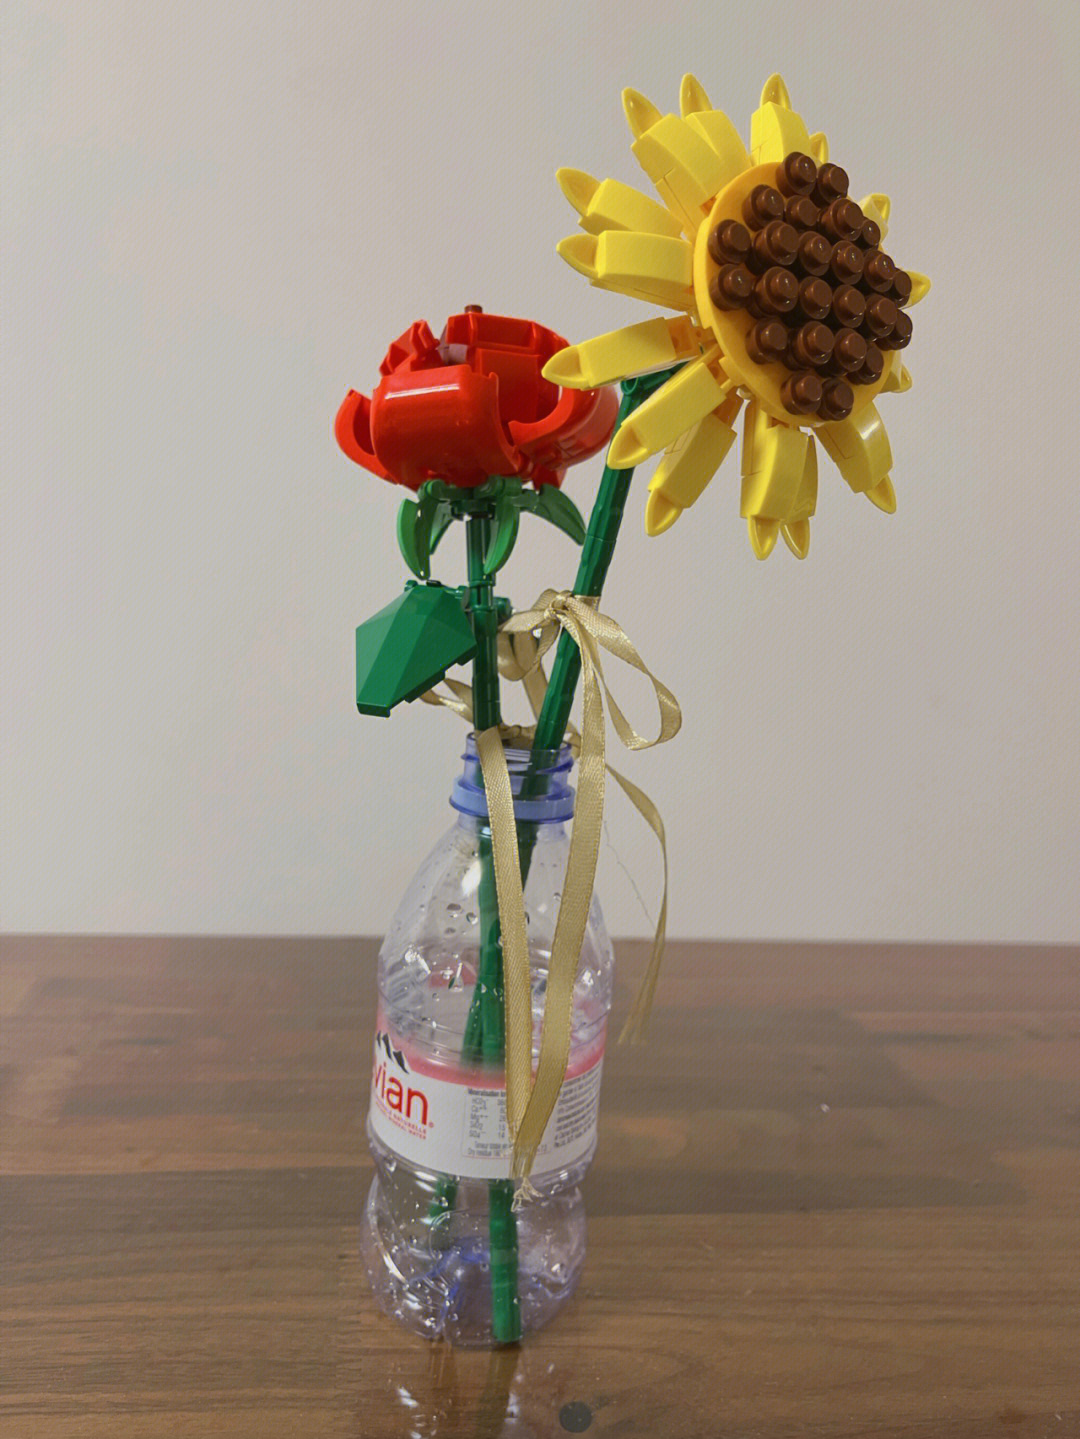 塑料瓶花朵的详细步骤图片